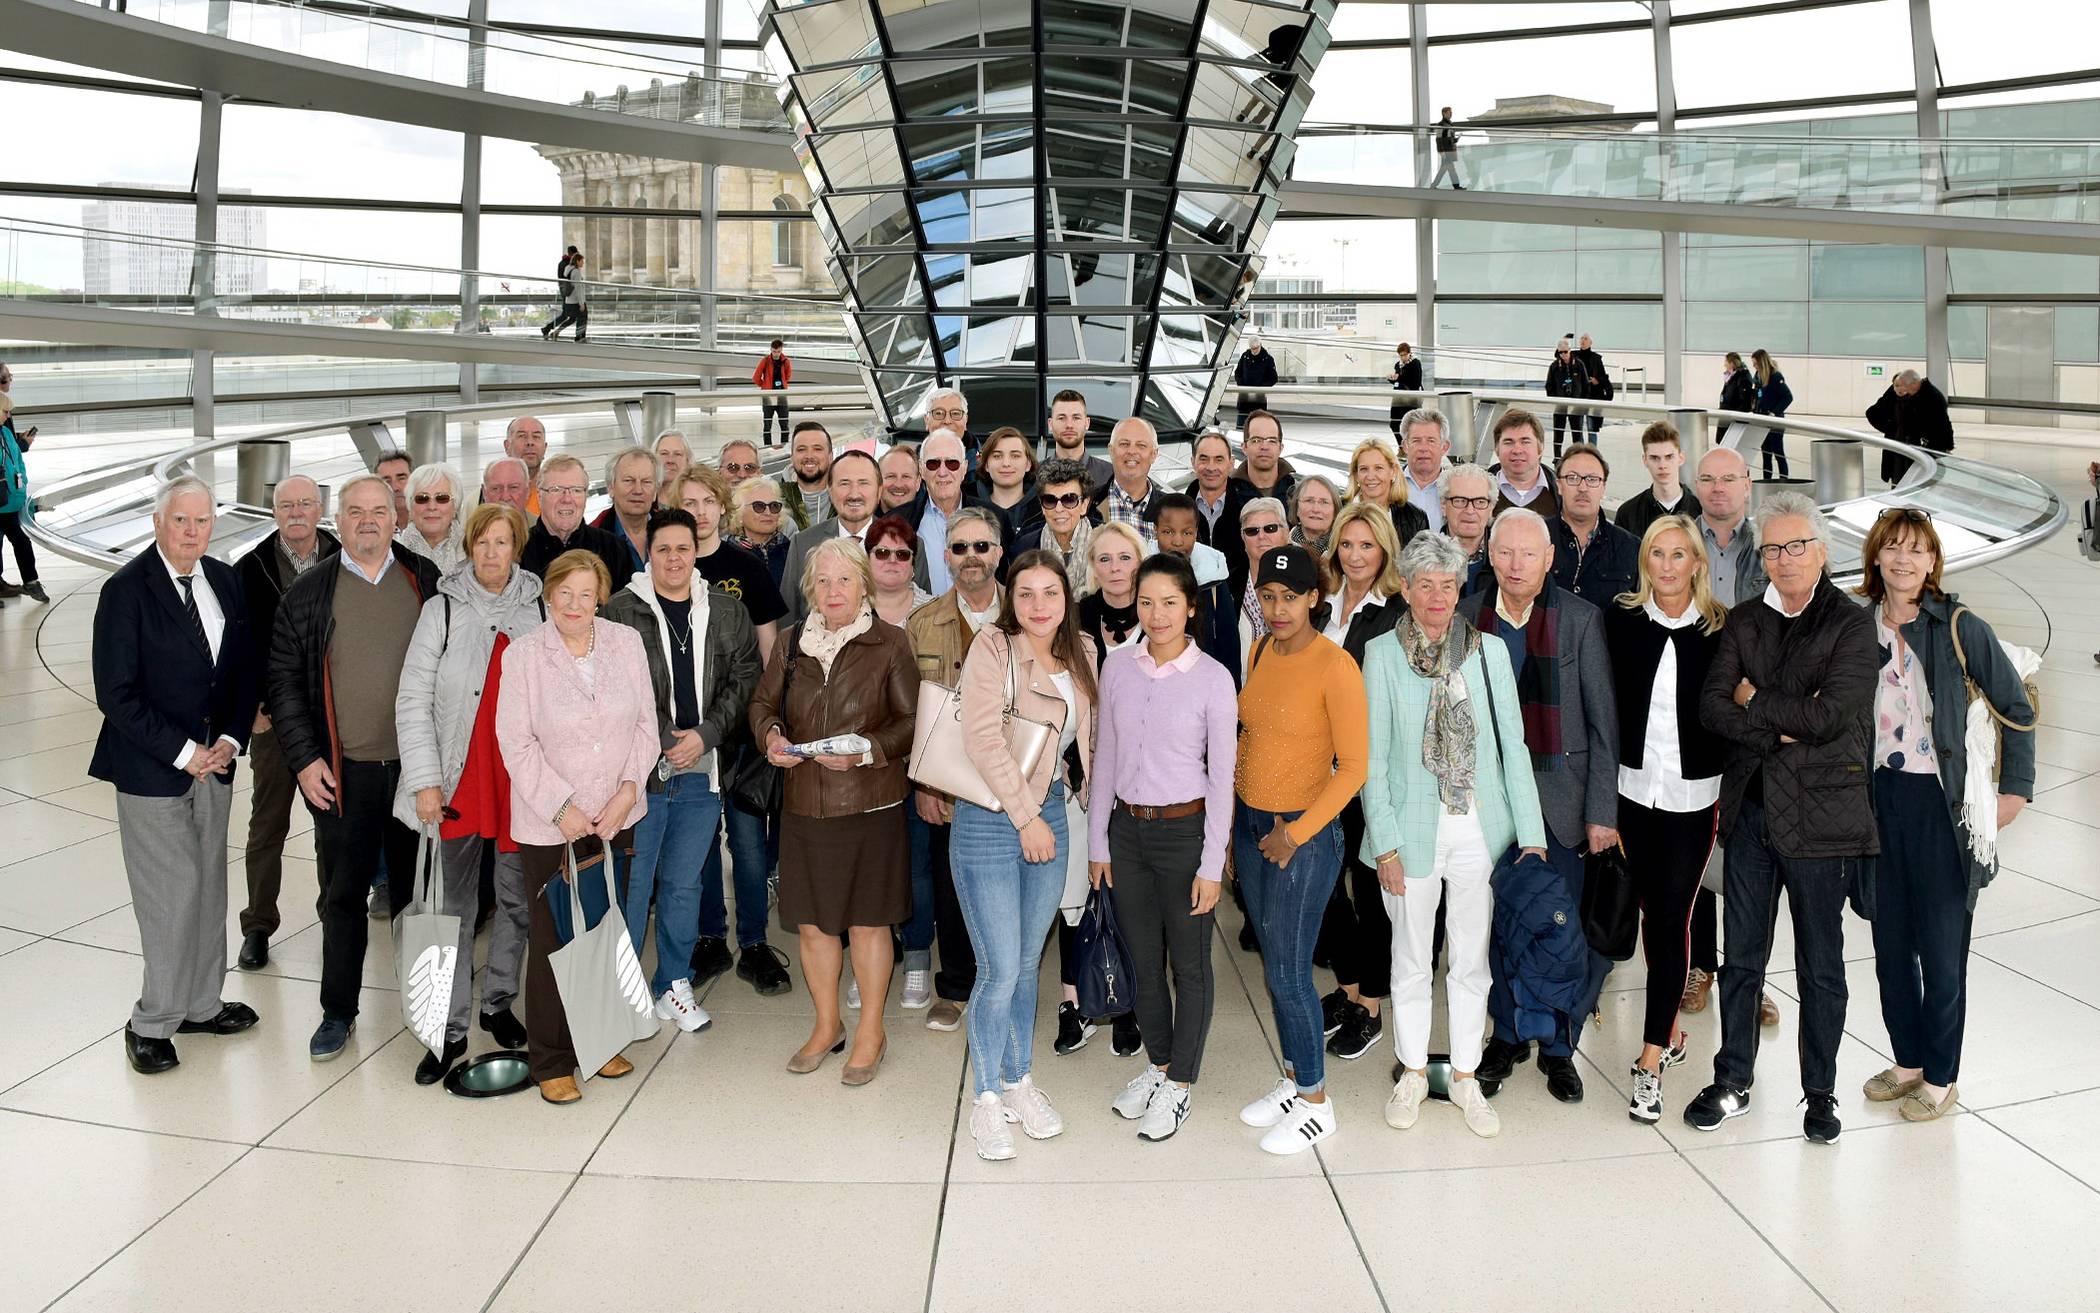  Das Gruppenfoto in der Kuppel des Reichstages. 